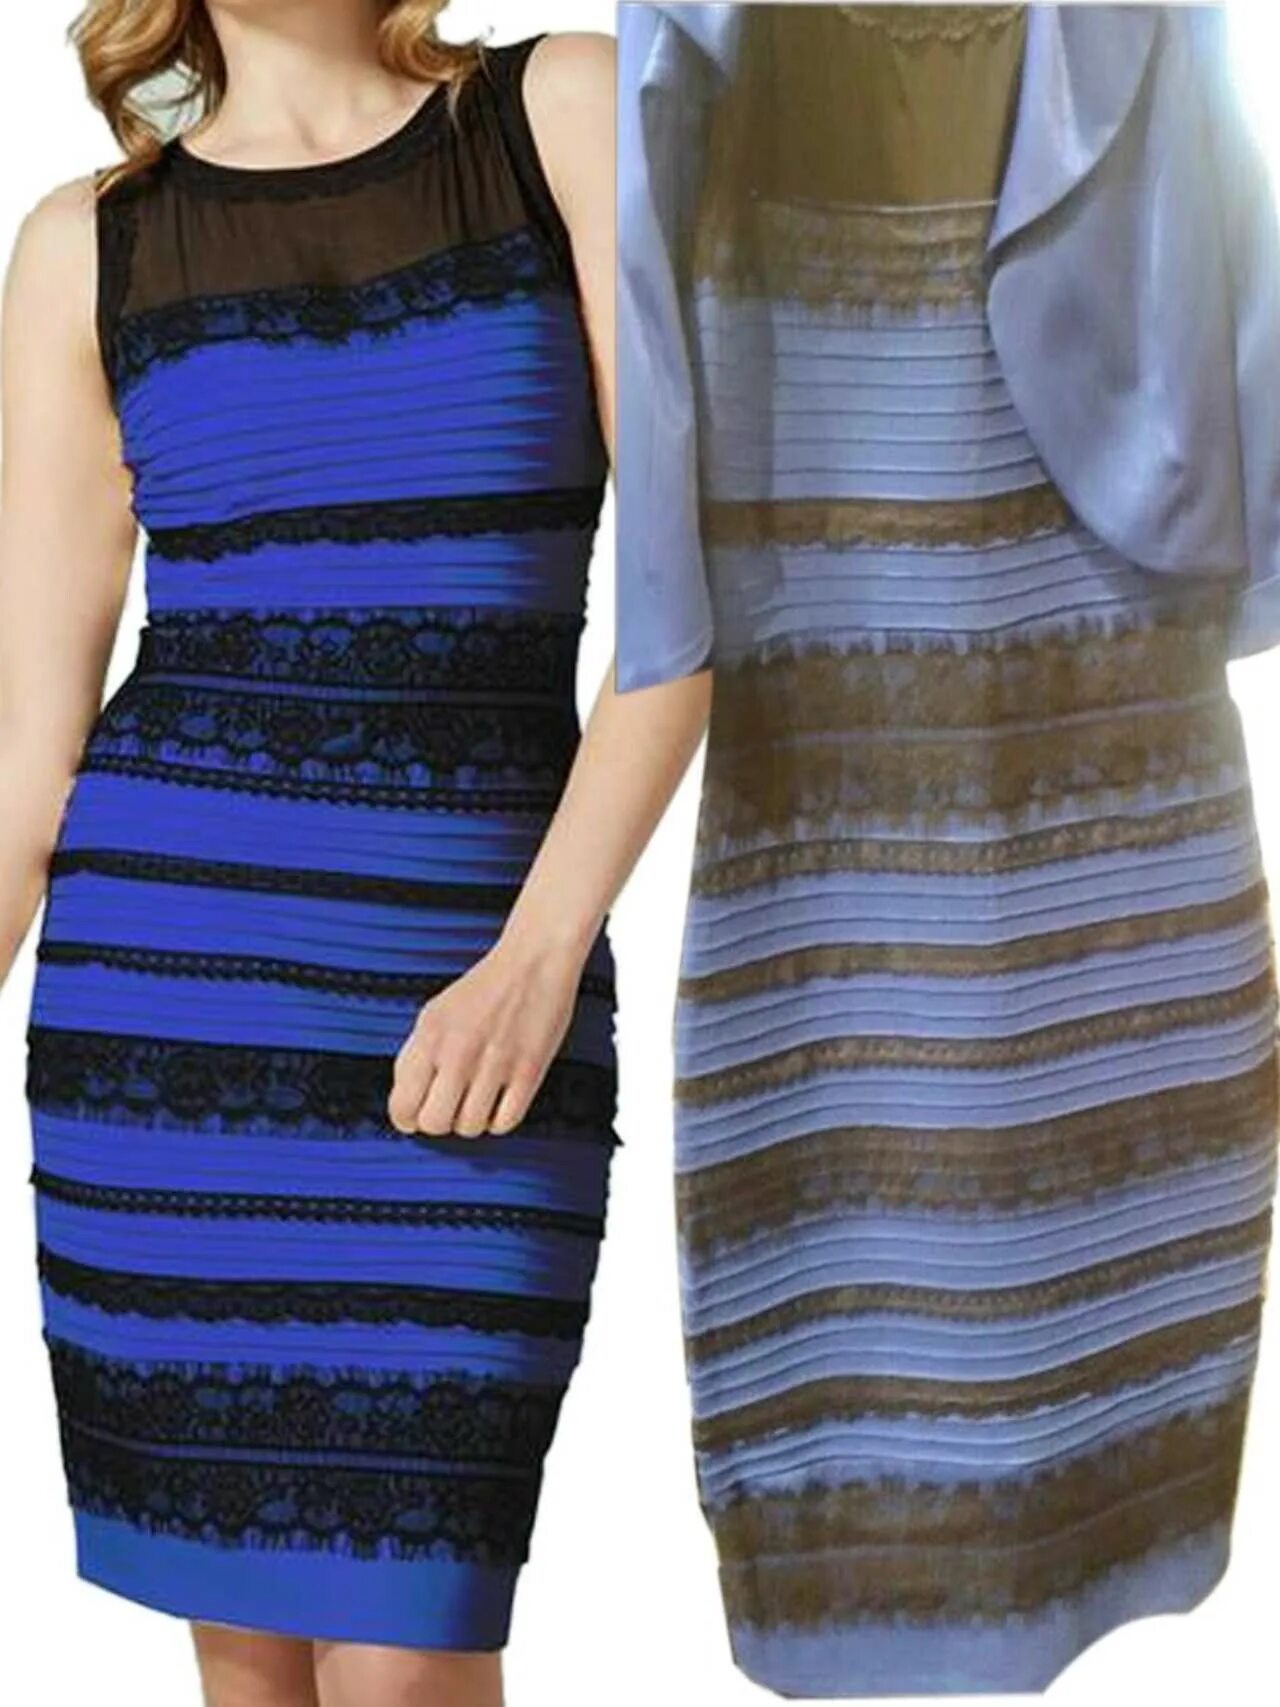 Сине чёрное платье и бело золотое иллюзия. Иллюзия платье белое или синее. Черно синее платье. Сине золотое платье. Синее ли платье